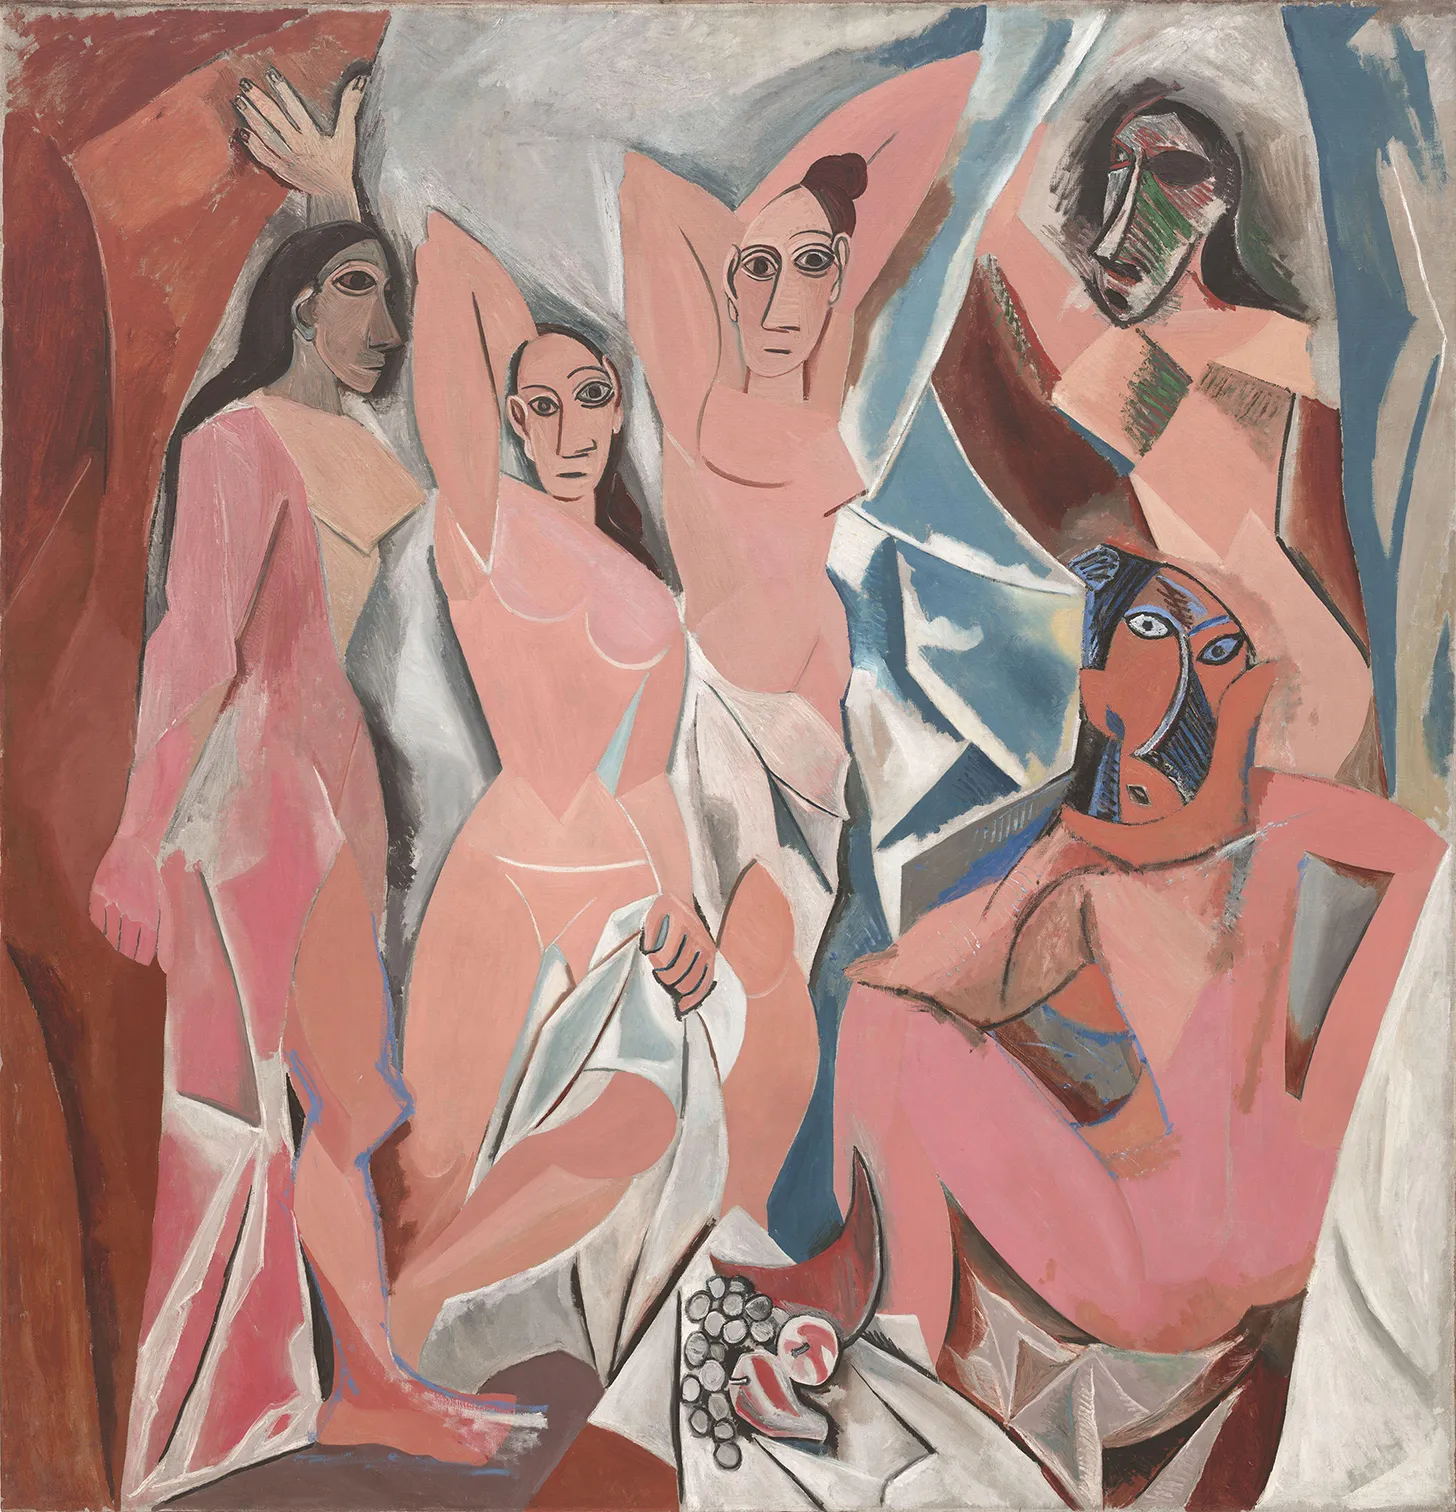 Pablo Picasso, *Les Demoiselles d’Avignon*, 1907